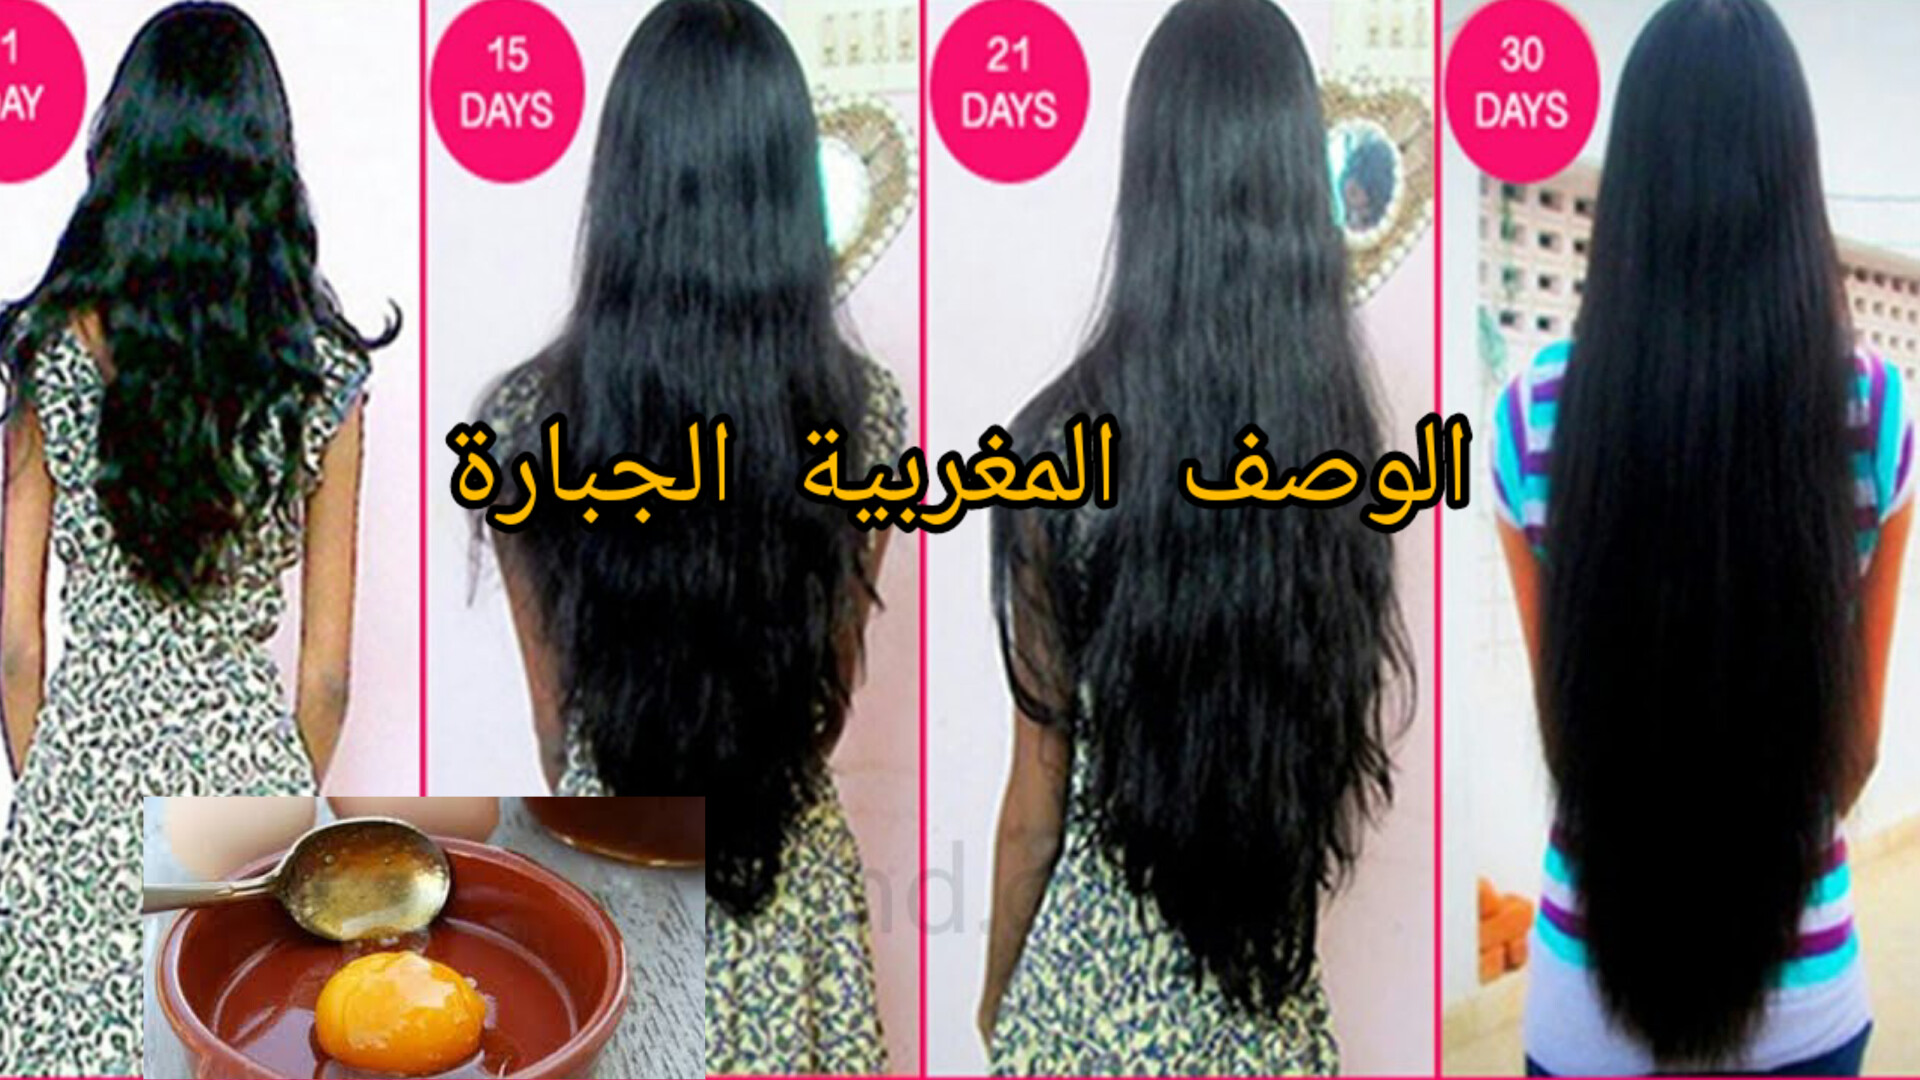 أقوى وصفة مغربية لإيقاف تساقط الشعر وإعادة إنبات الفراغات